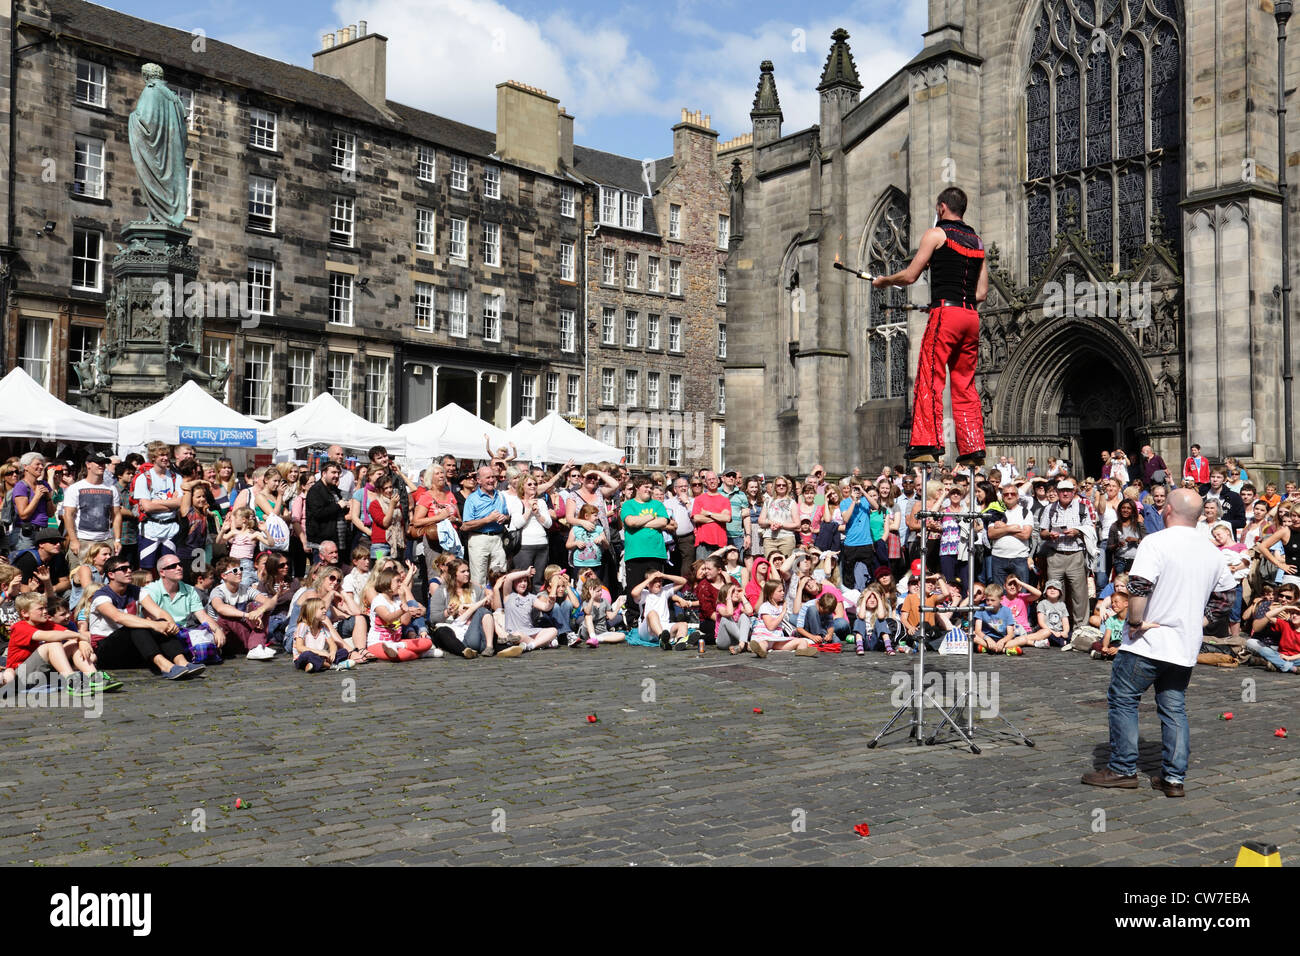 Zuschauer, die eine Straßenvorstellung beim Edinburgh Festival Fringe, West Parliament Square, Schottland, Großbritannien, beobachten Stockfoto